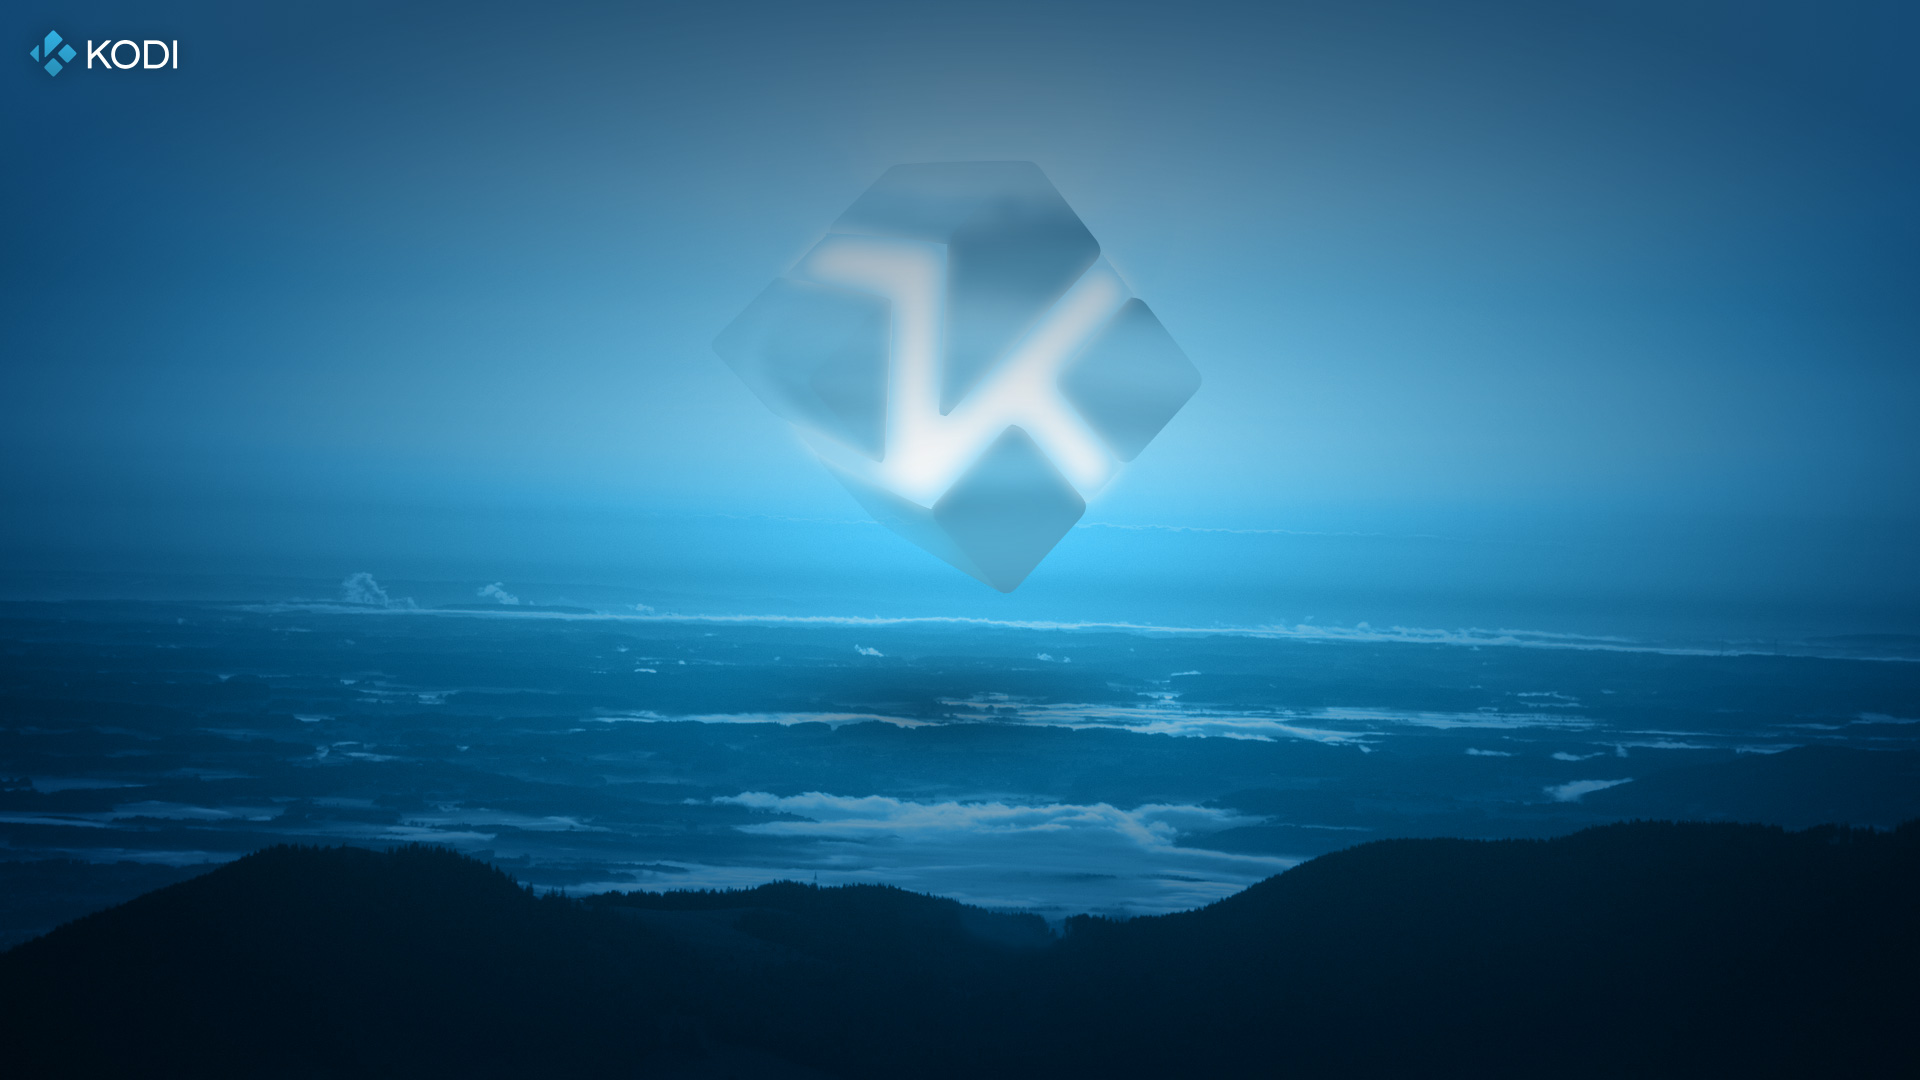 How to Change Background on Kodi? - Kodiprofy